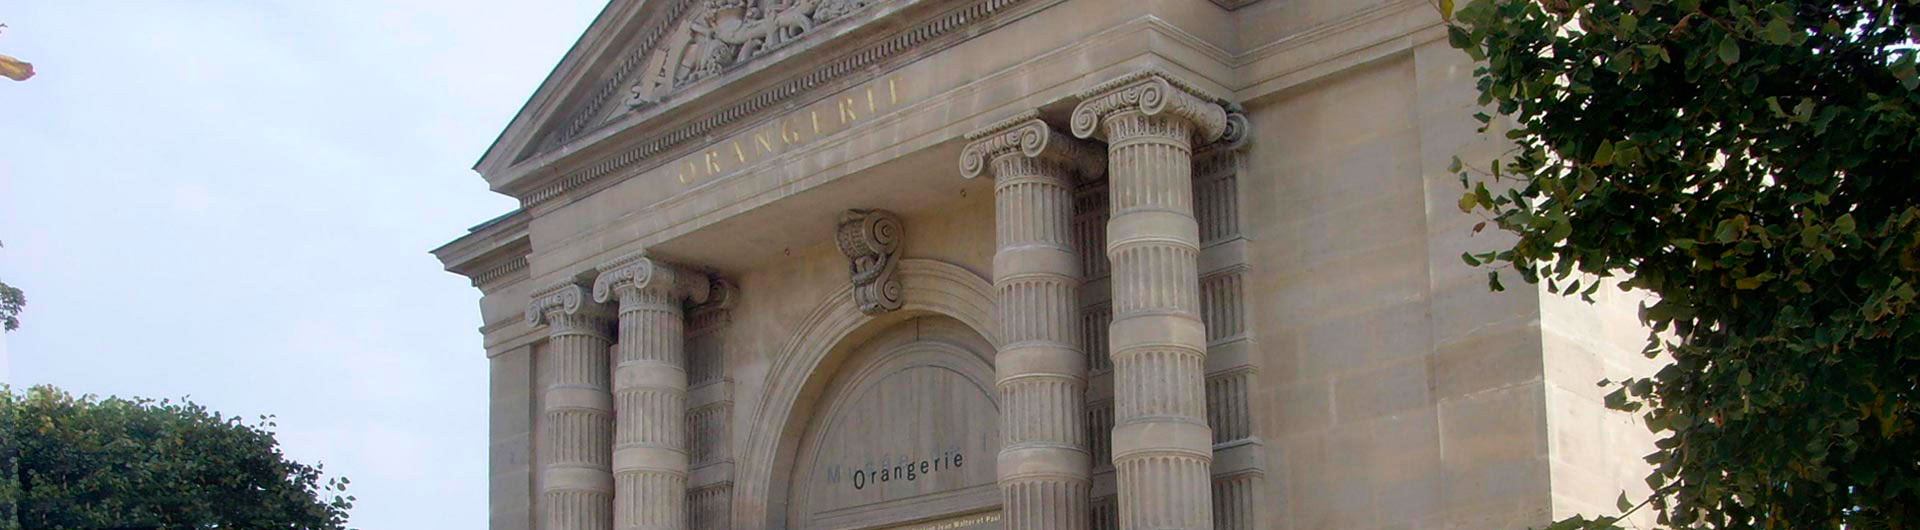 Guided tour of the musée de l'Orangerie